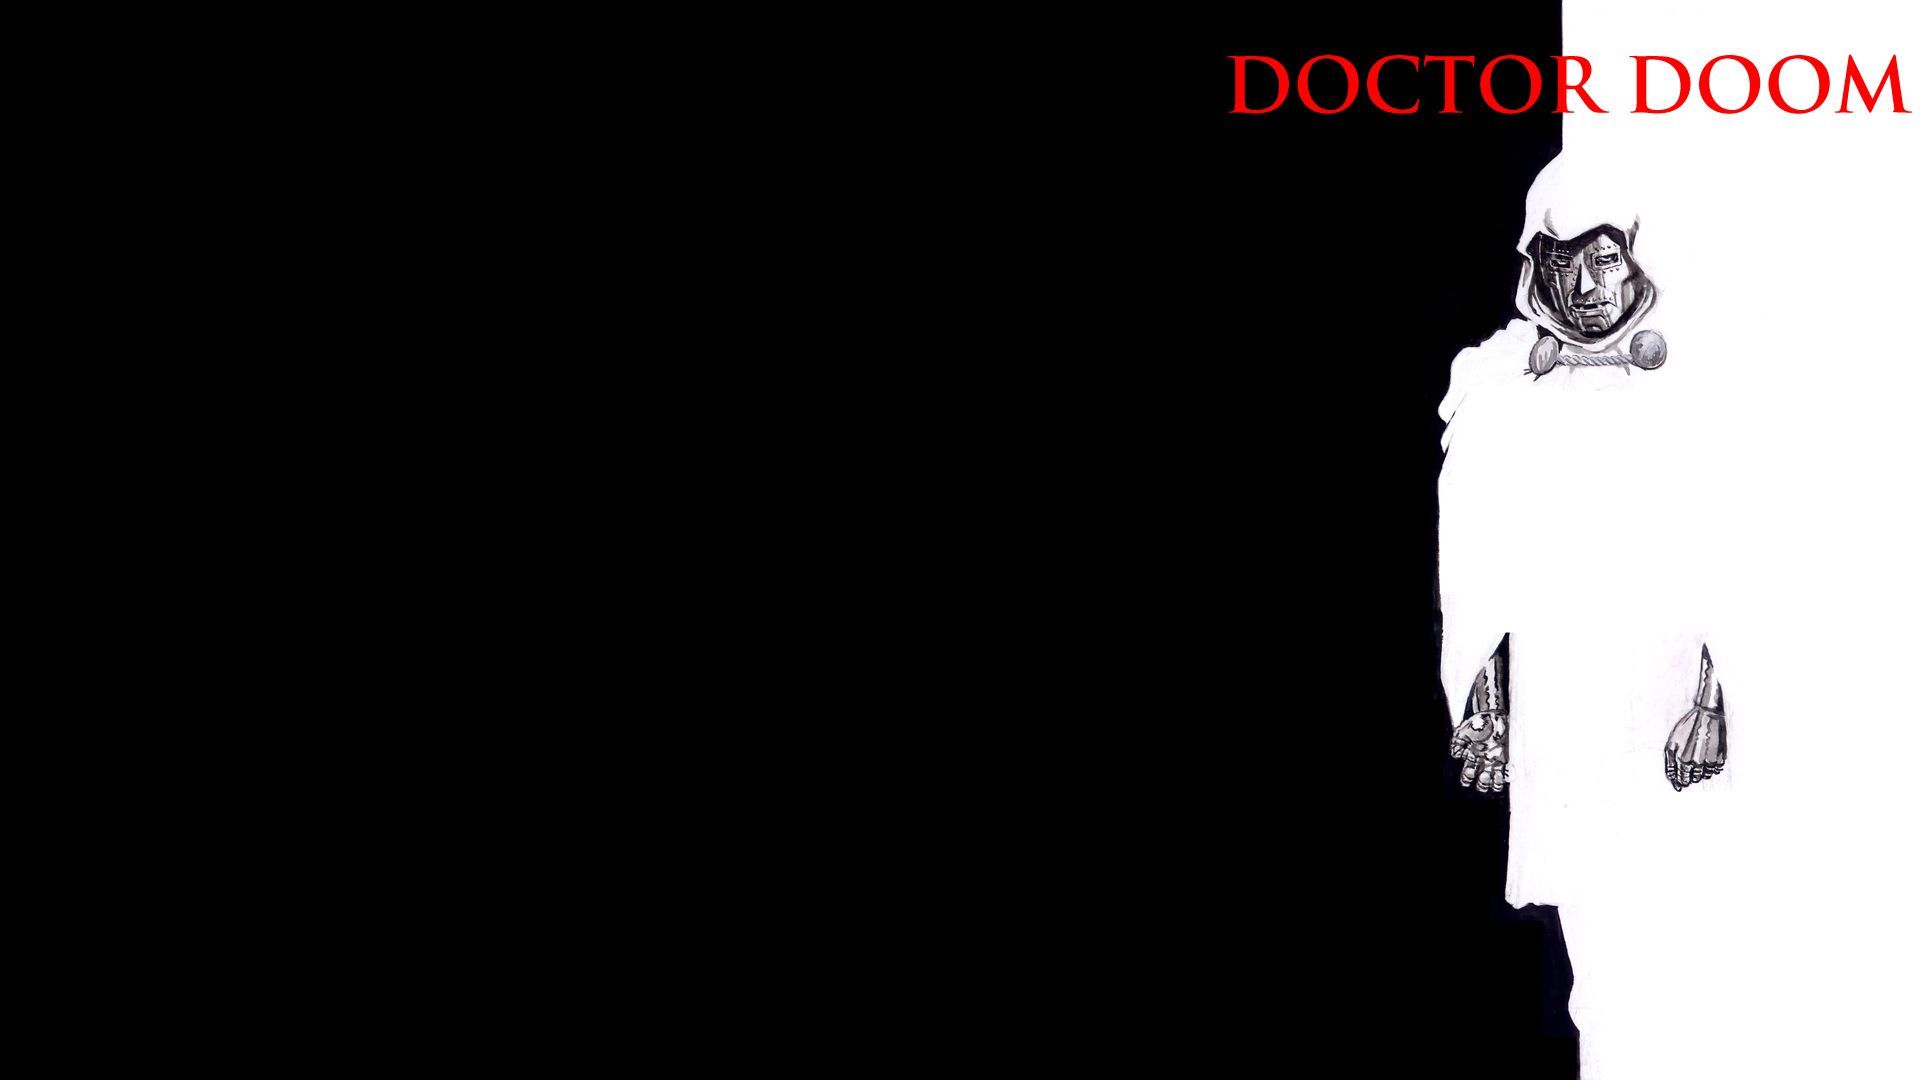 22265_comics_doctor_doom_doctor_doom.jpg